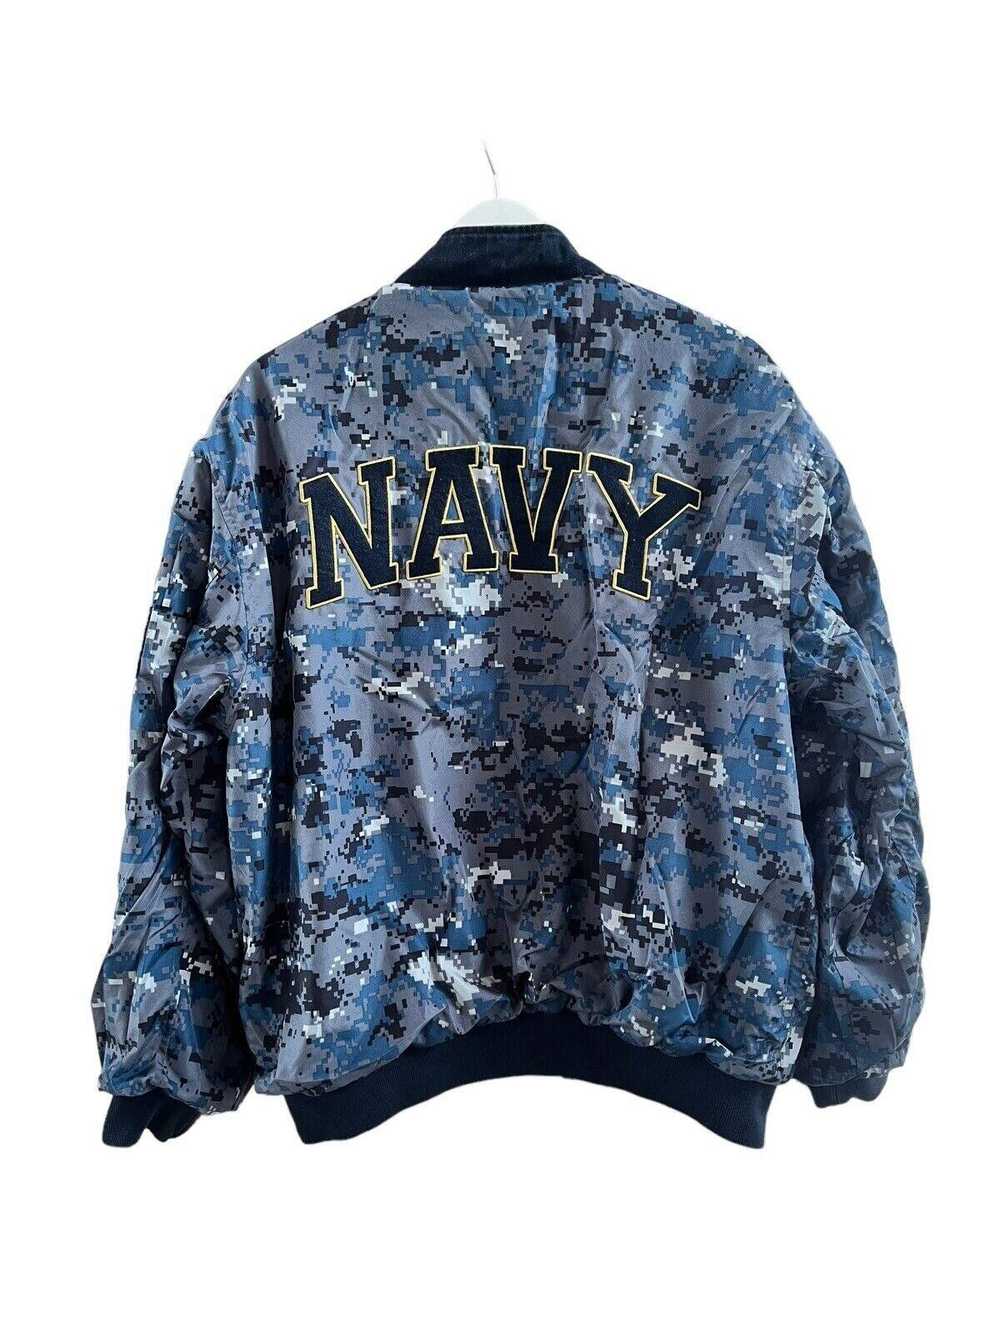 Designer 2011 Navy USA Reversible Jacket Men’s Me… - image 2